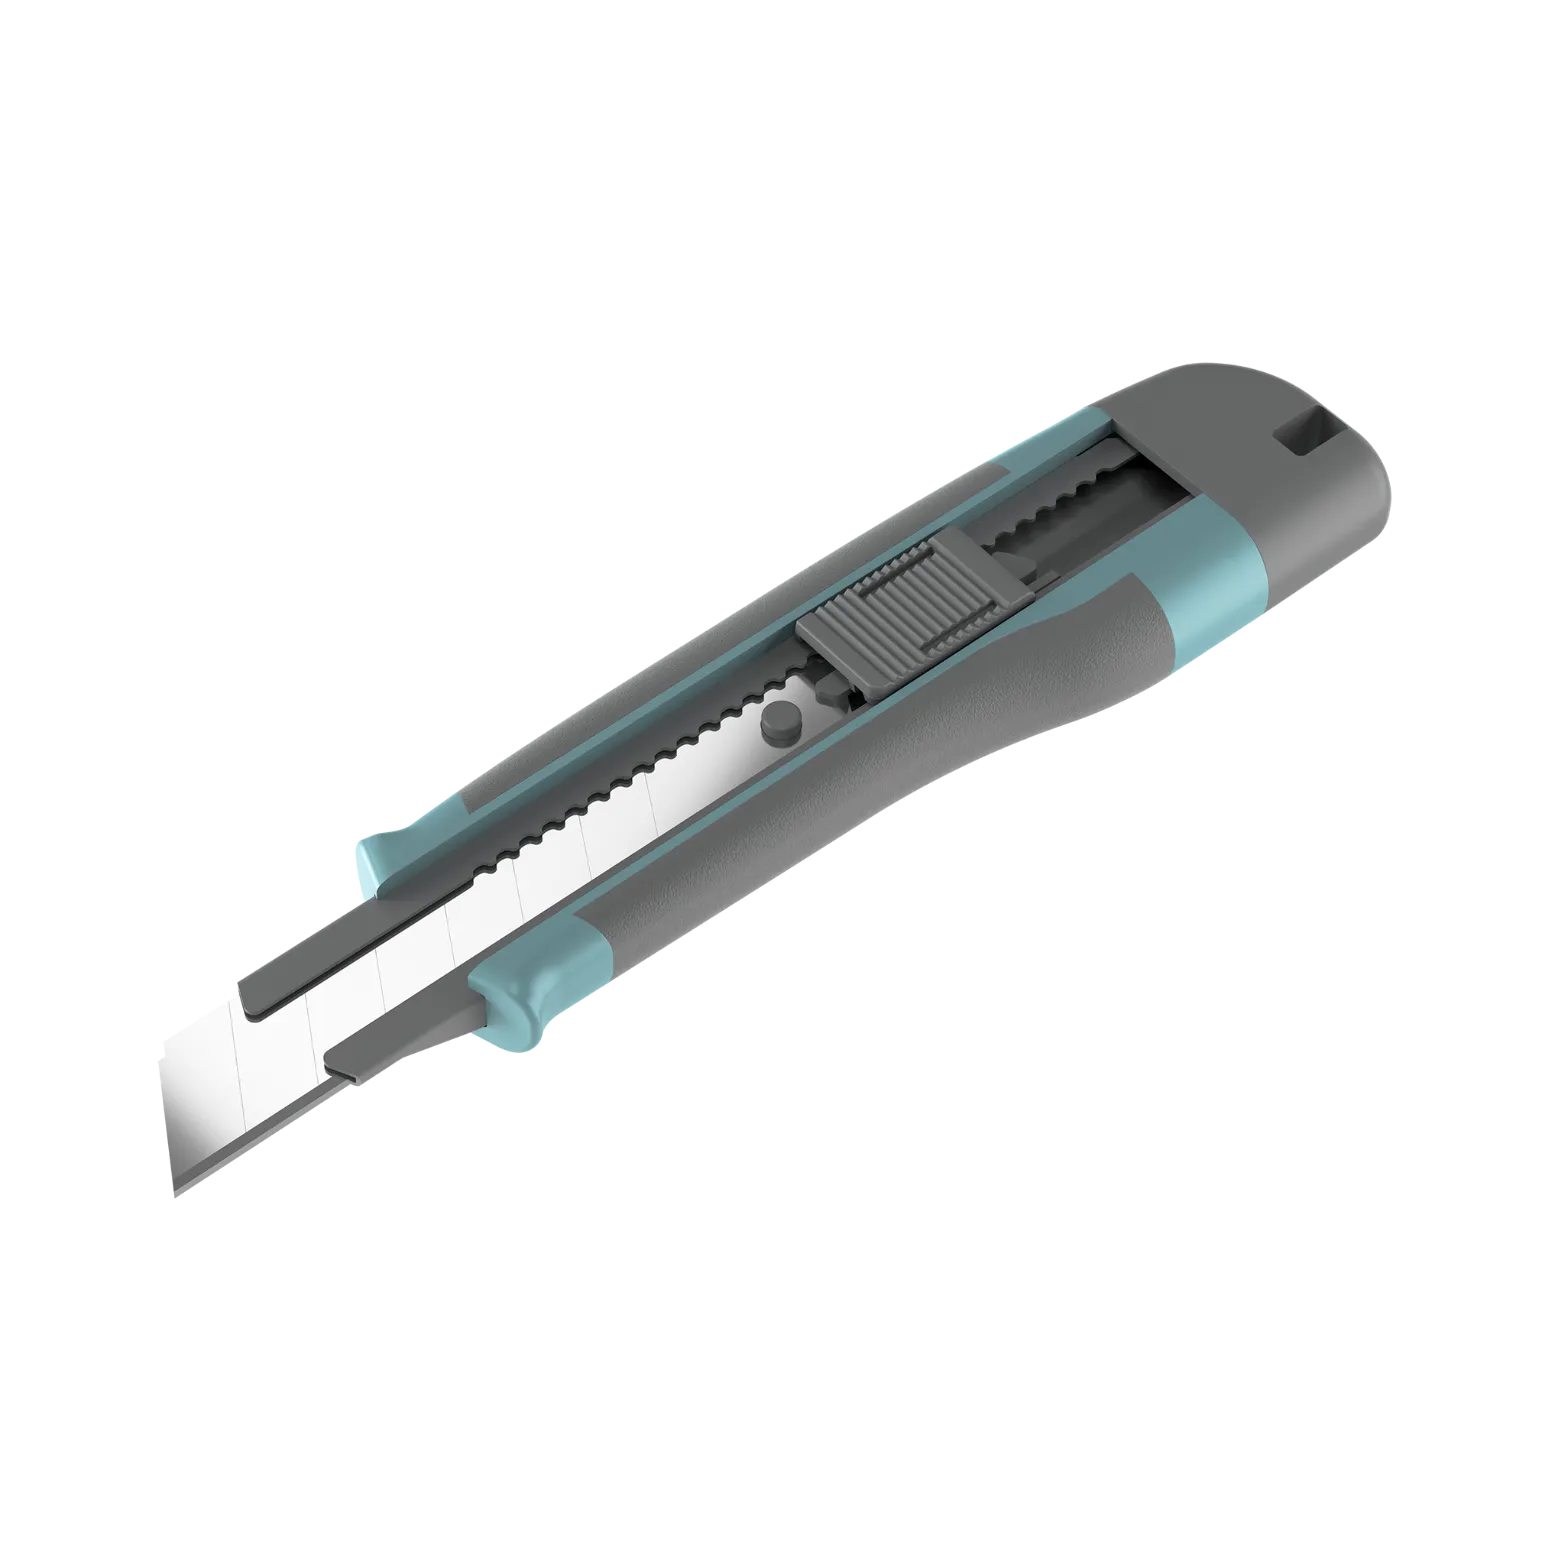 nmuk-09-utility-knife-3